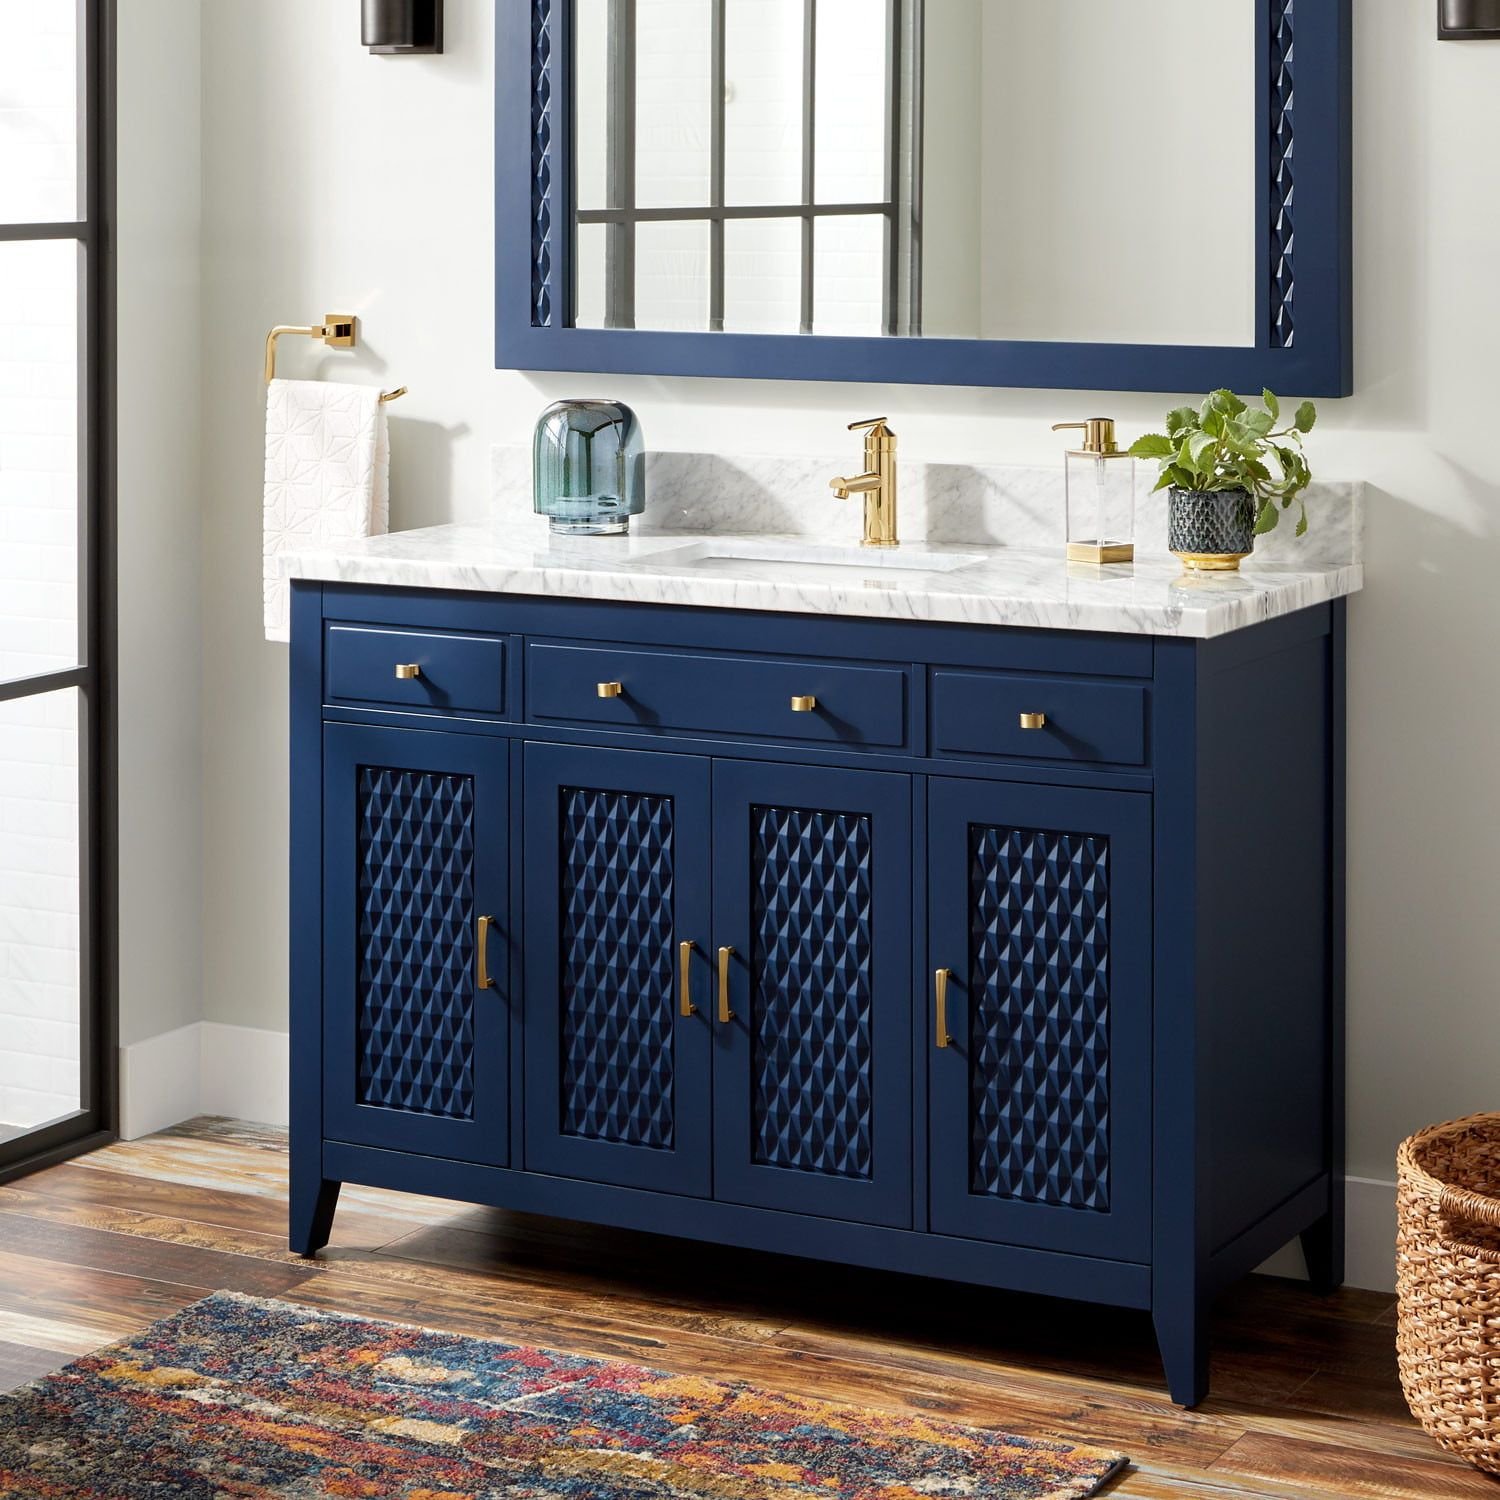 Мебель для ванны напольная. Navy Blue Bathroom Vanity 48 inch Double Sink. Каприго мебель для ванной. Мебель для ванной синего цвета. Тумба в ванную комнату.